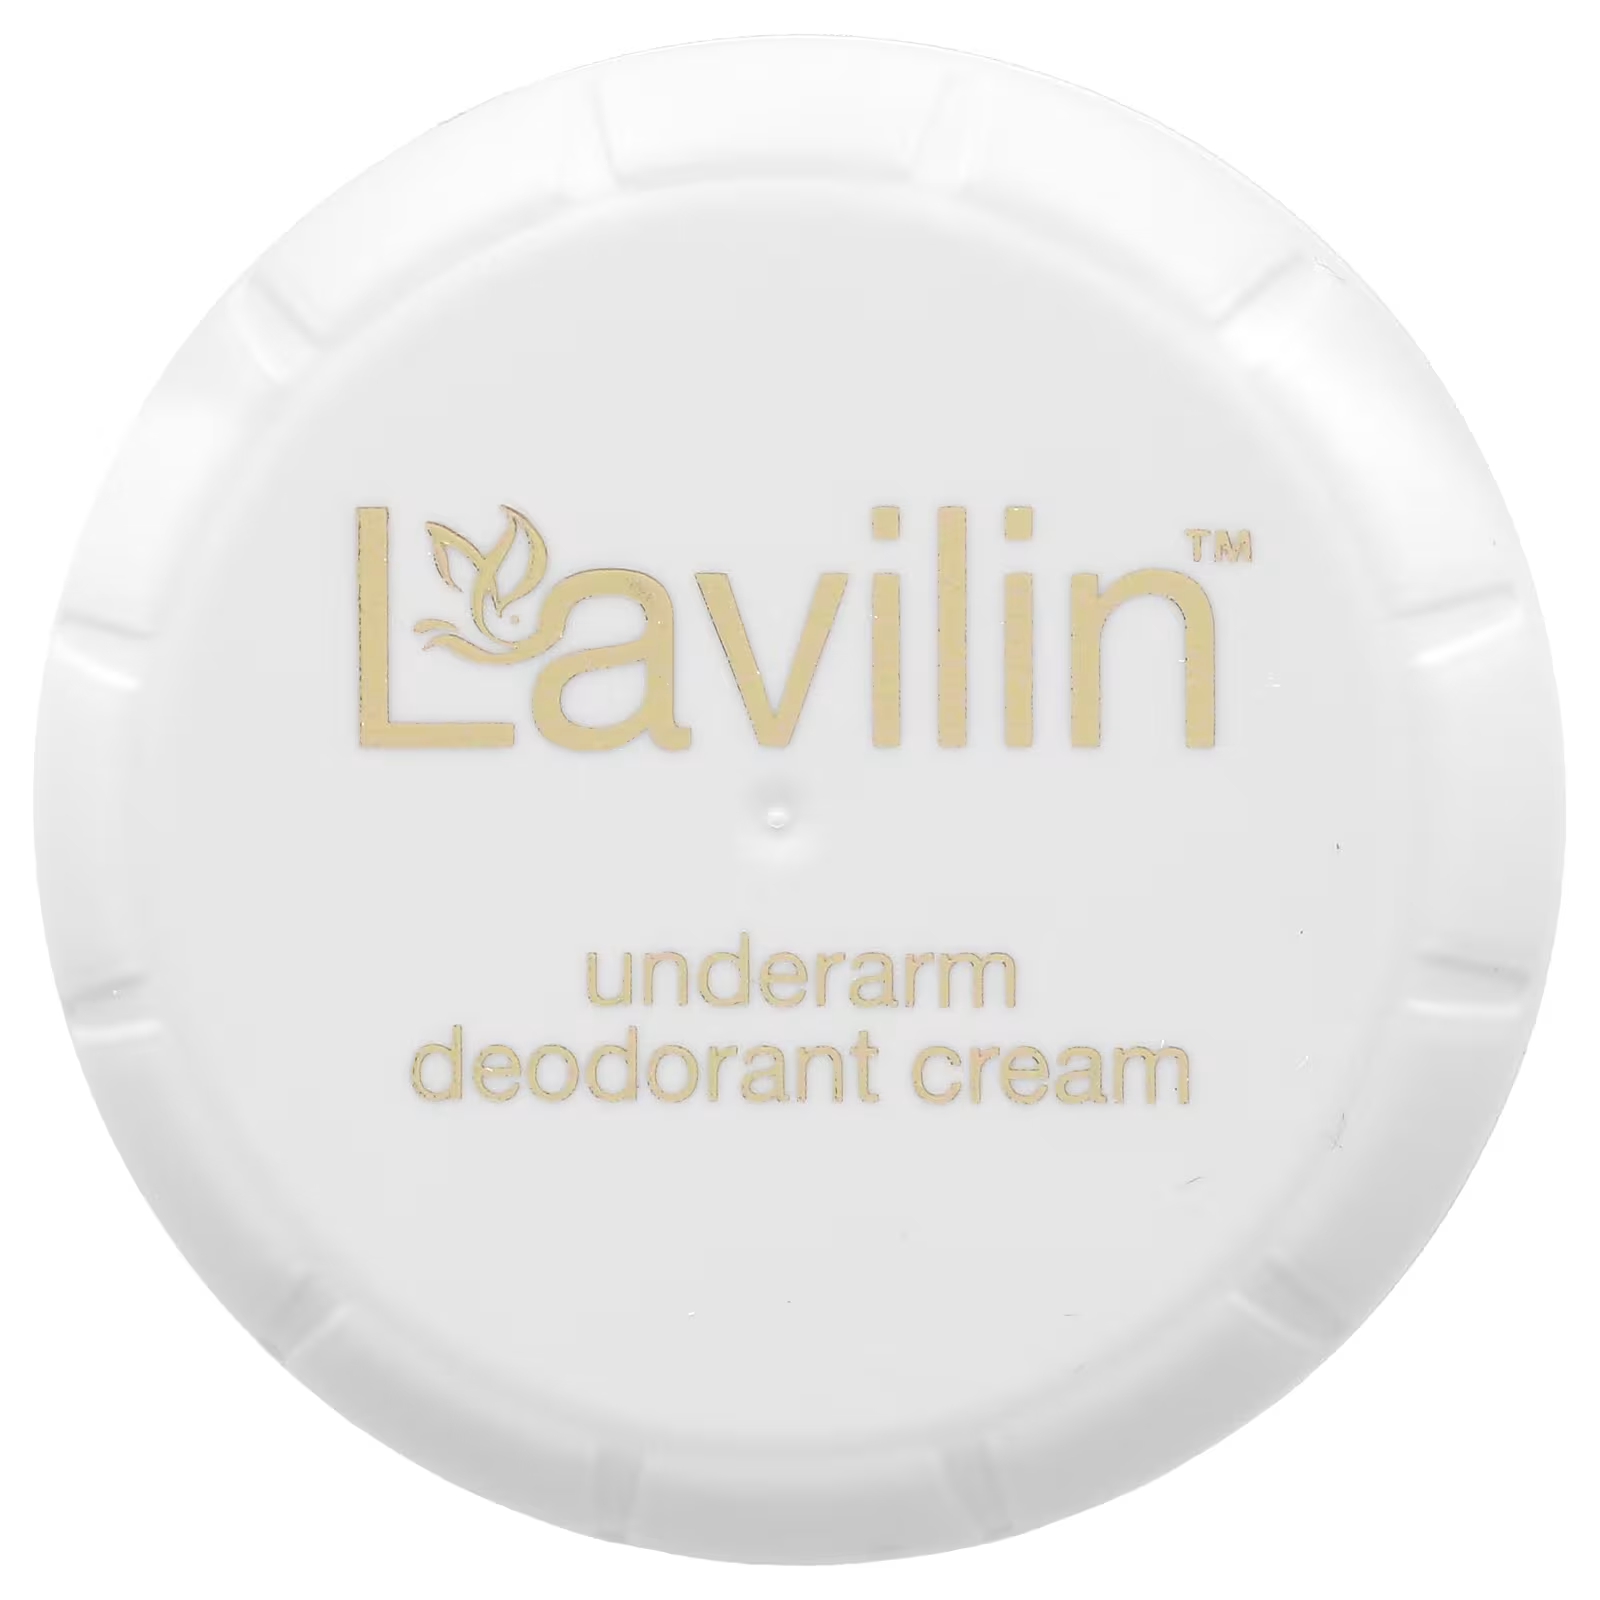 Крем-дезодорант Lavilin для подмышек крем для удаления запаха тела крем для подмышек с плохим запахом для удаления потоотделения освежающий дезодорант антиперспирантный кре